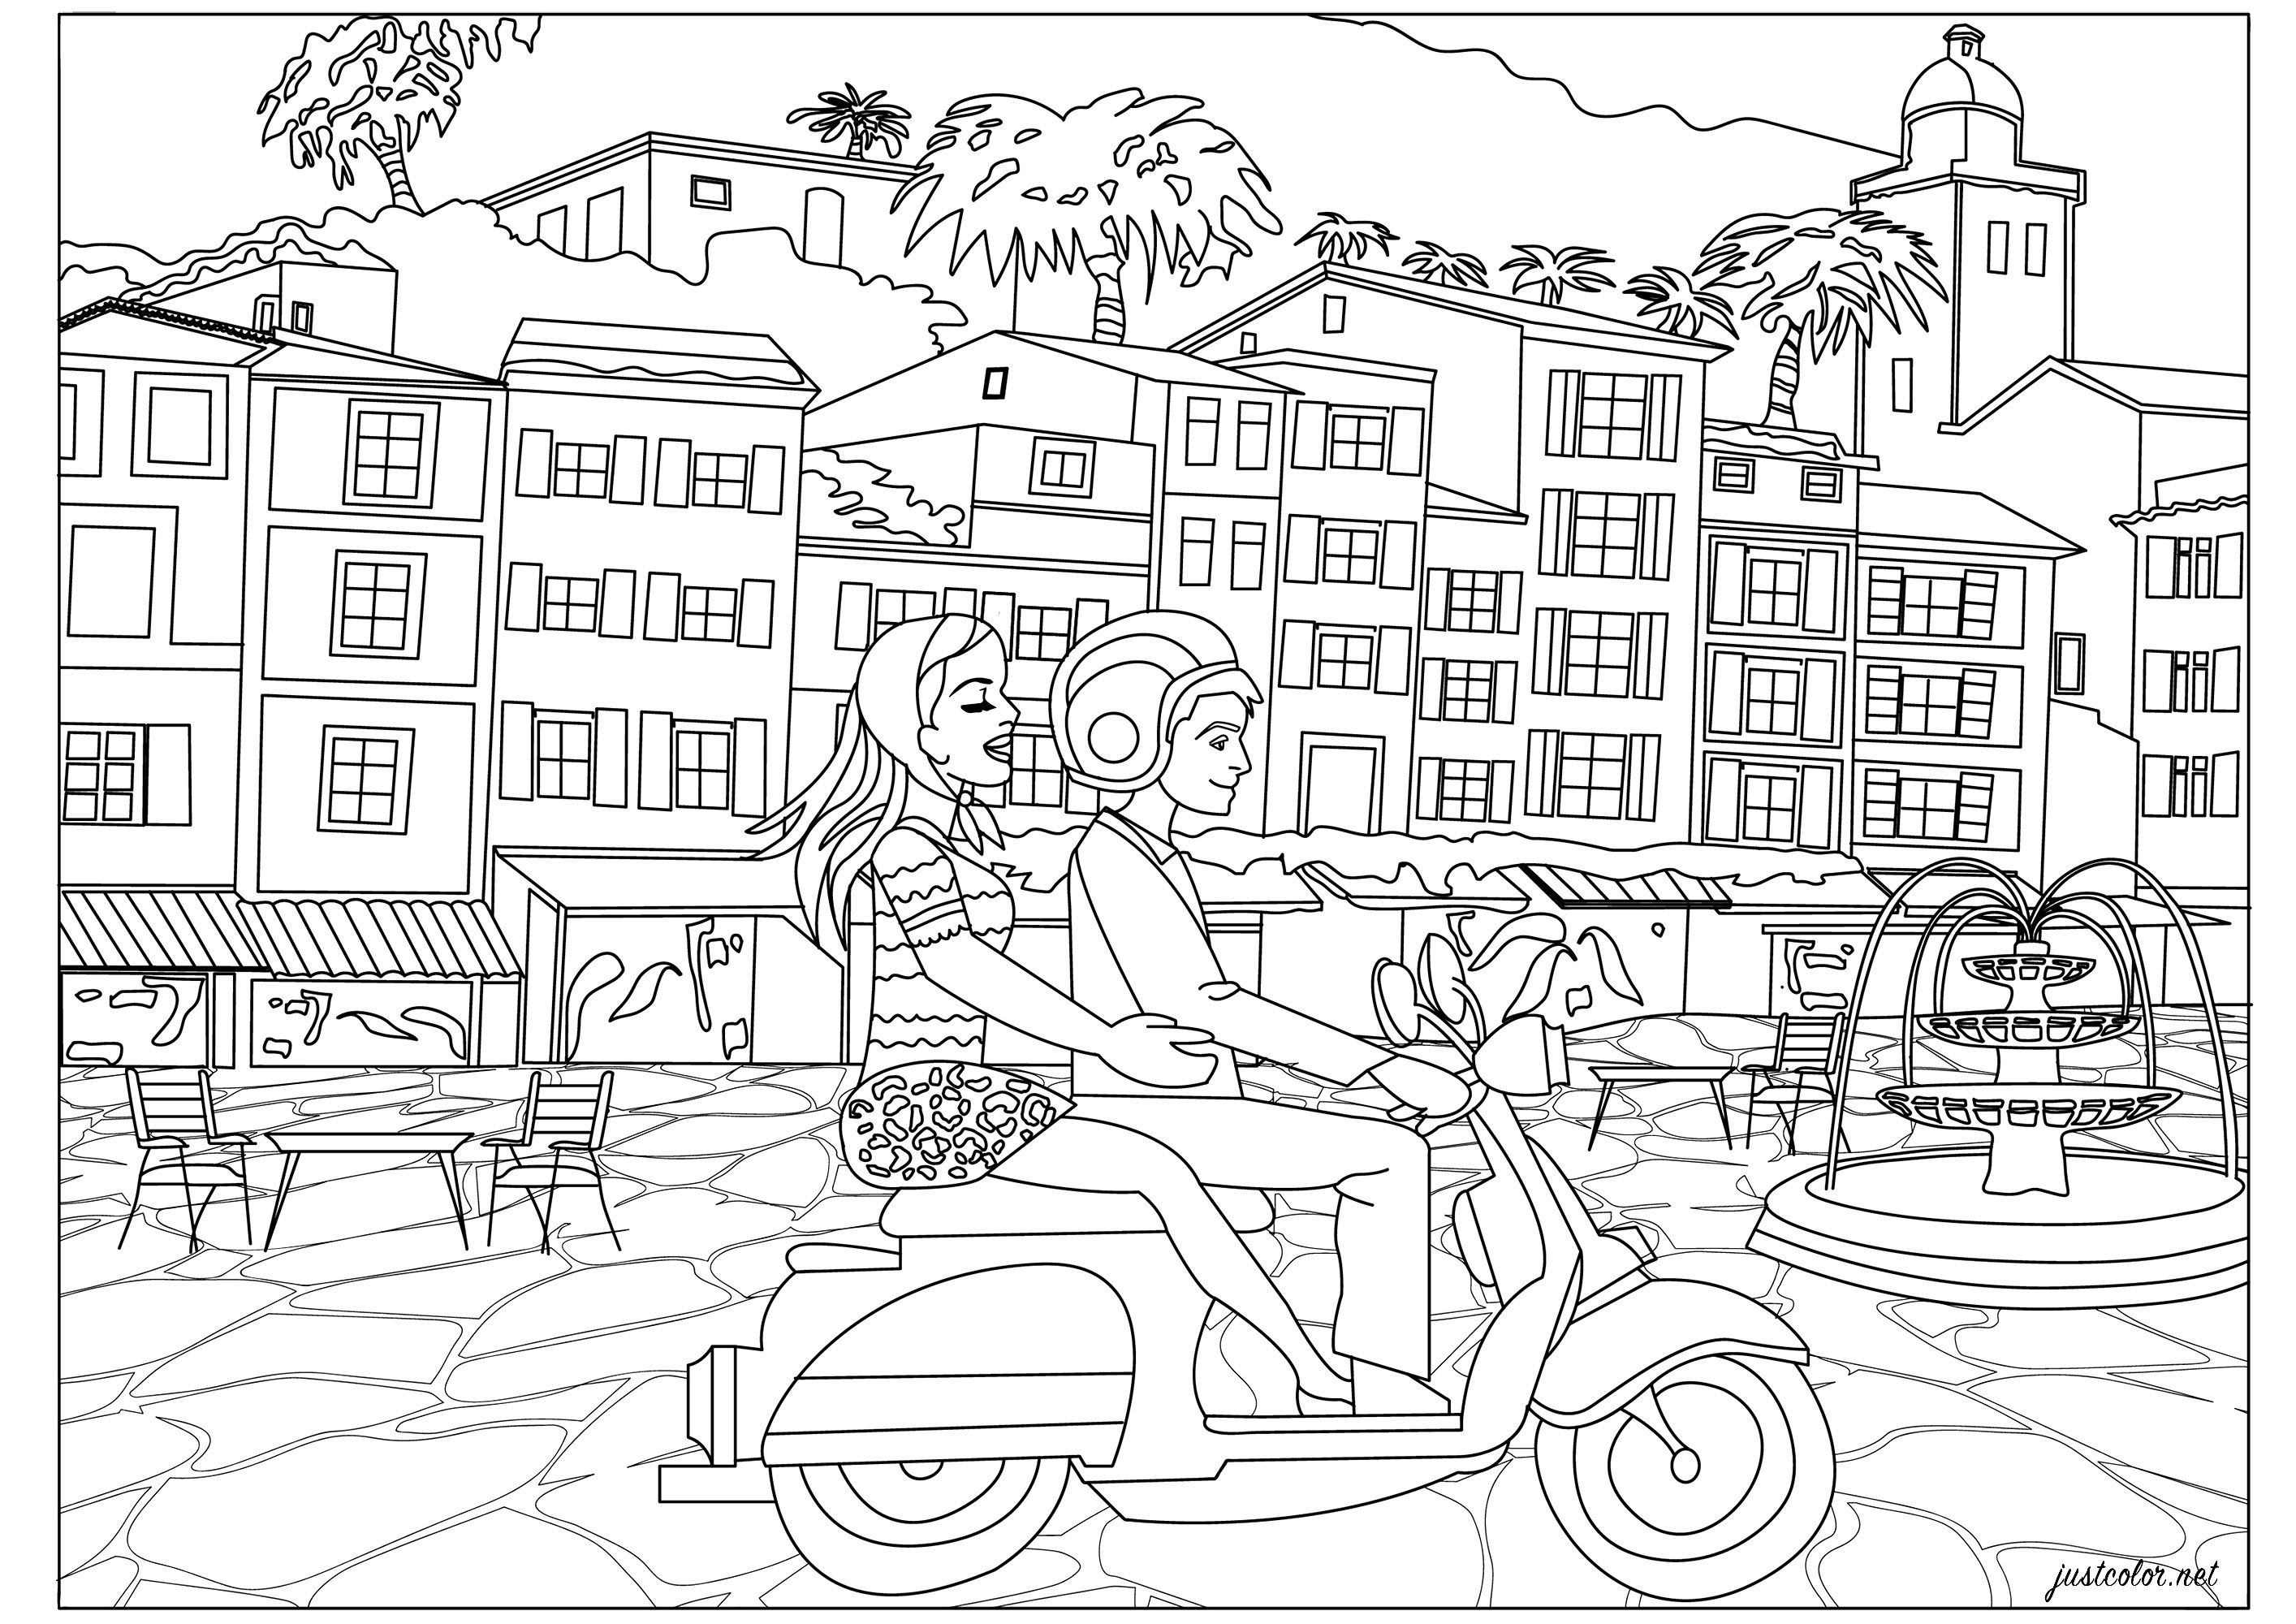 Italienurlaub für dieses junge Paar auf ihrem Vespa-Roller. Spaziergang an der Küste mit der Durchquerung von hübschen Dörfern ... Färben Sie diese typisch italienischen Häuser, den Brunnen auf dem Platz, den Motorroller und erholen Sie sich von der 'Dolce Vita' Atmosphäre.